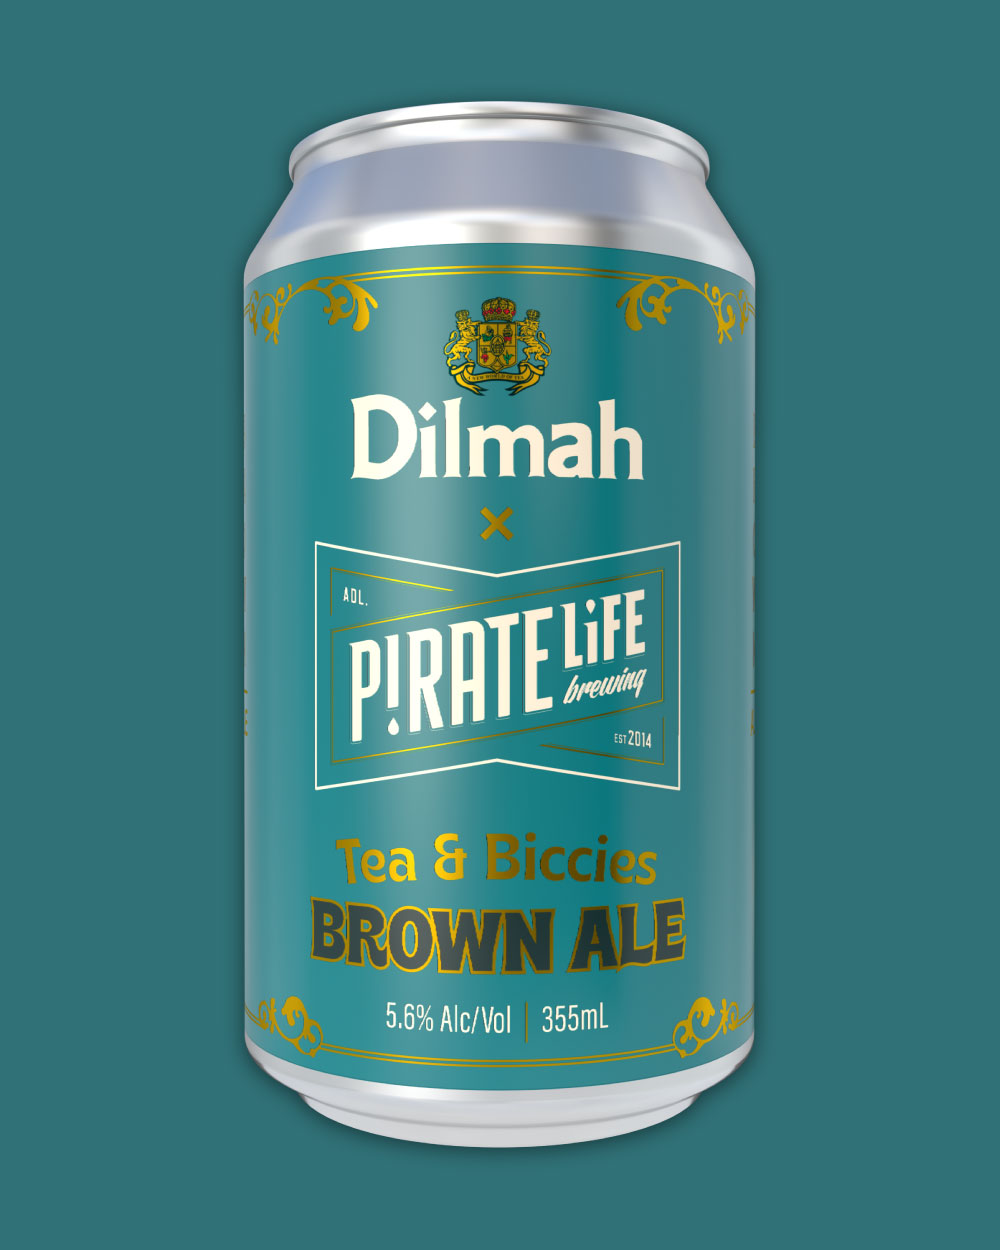 Dilmah Tea & Biccies Brown Ale